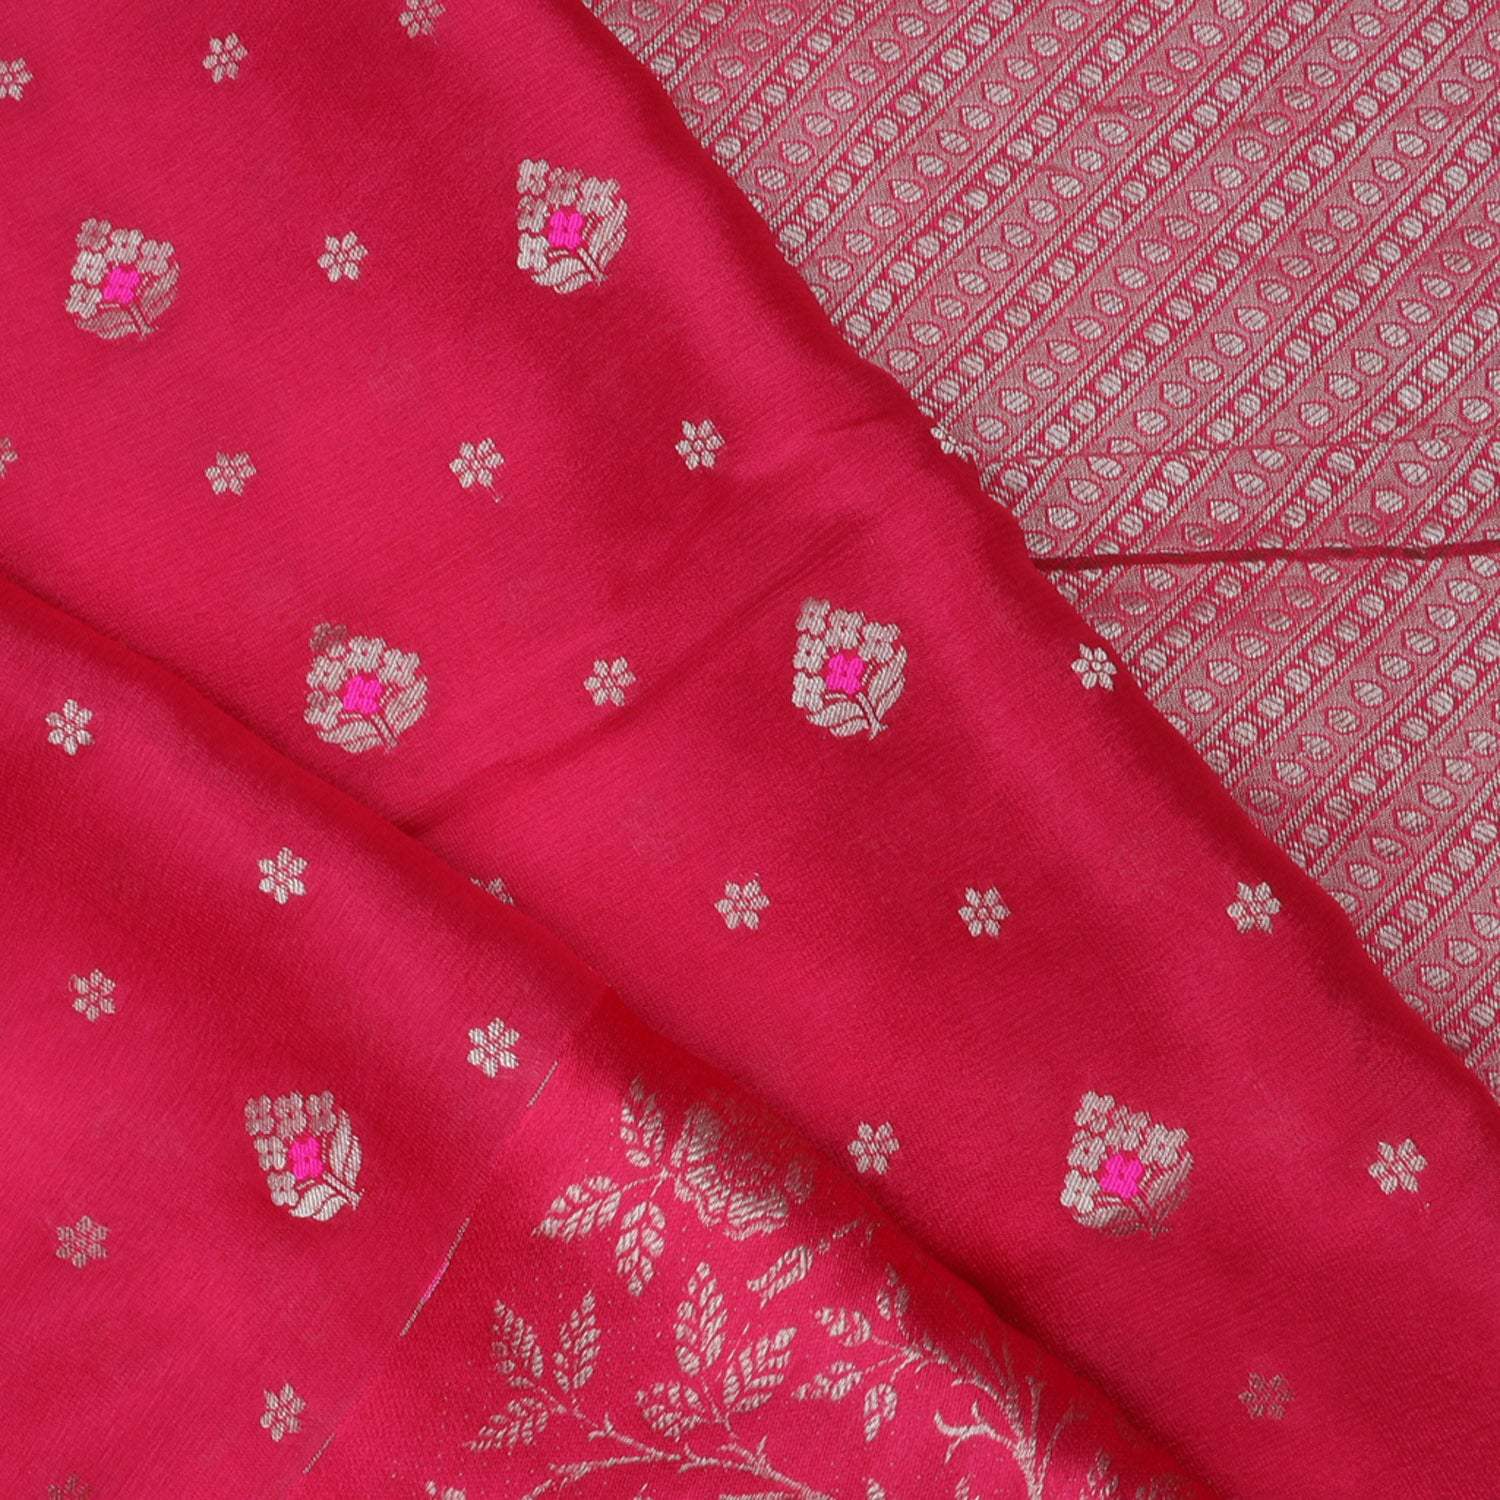 Deep Red Banarasi Silk Handloom Saree With Floral Buttis - Singhania's